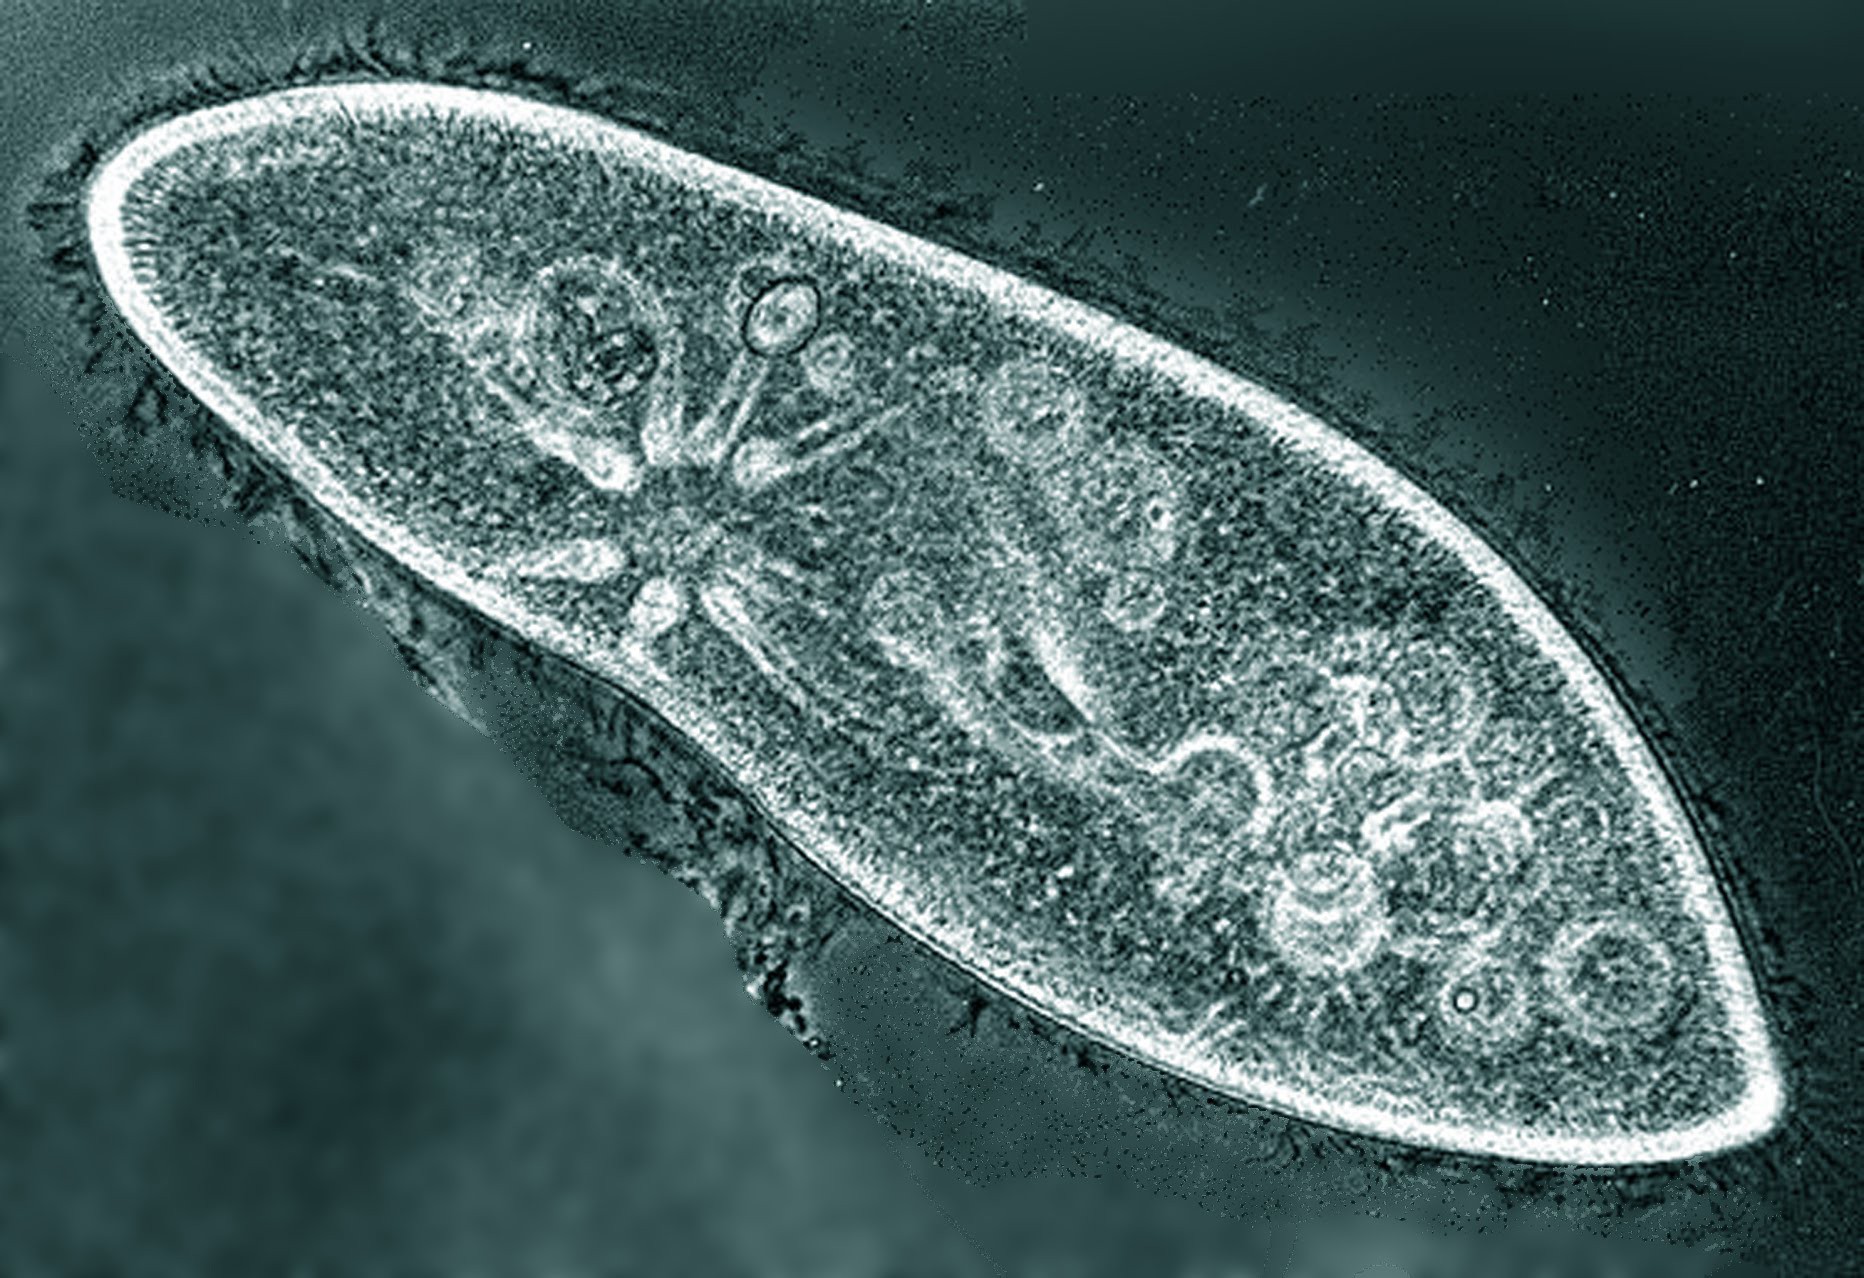 Самый простой одноклеточный организм. Одноклеточные организмы инфузория туфелька. Инфузории Paramecium. Инфузория-туфелька протисты. Инфузория туфелька Paramecium caudatum.